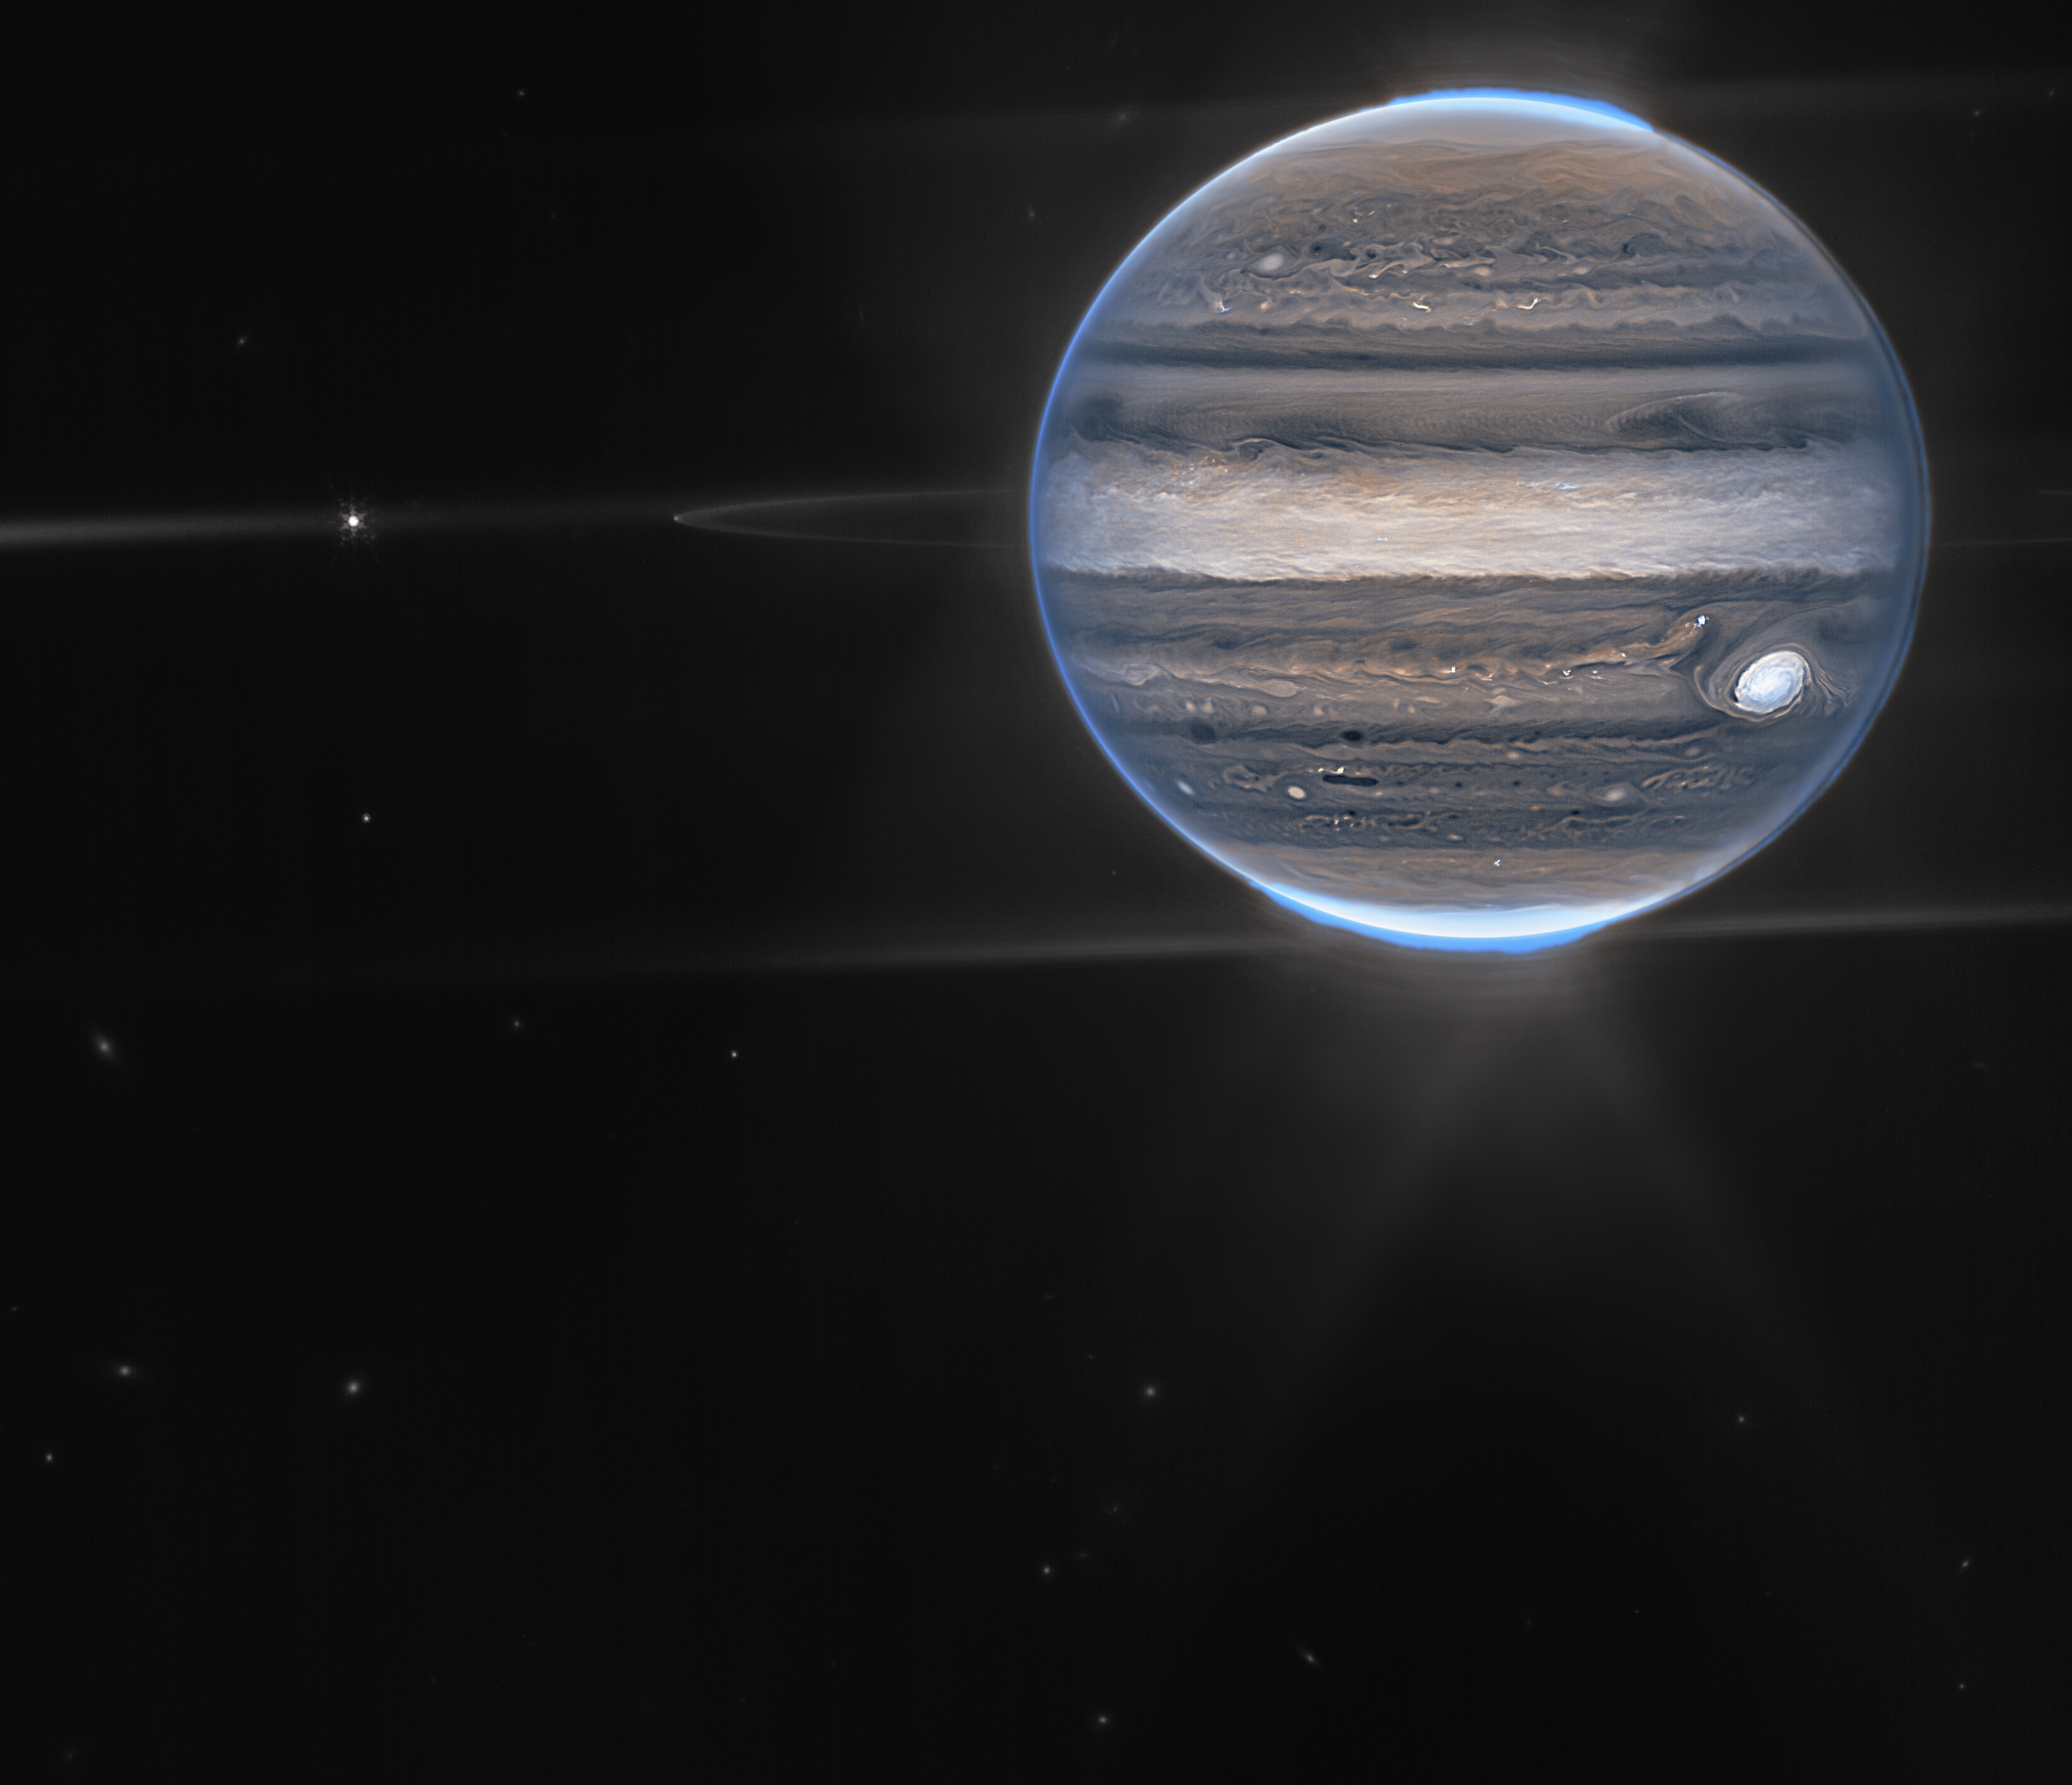 Na ilustracji: Zdjęcie Jowisza zrobione Teleskopem Webba z kamerą NIRCam  – w dwóch barwach / filtrach: F212N (pomarańczowy) i F335M (cyjan/niebieskozielony)  – oraz w dwóch wersjach: bez etykiet (u góry), z etykietami (na dole). Na zdjęciu widać szczegóły atmosfery Jowisza (np. gigantyczne burze, potężne wiatry, zorze polarne), jego pierścienie (około milion razy słabsze niż planeta), niektóre małe księżyce (Amaltea, Adrastea), a nawet galaktyki w tle (rozmyte plamki). Słynna burza – Wielka Czerwona Plama, trwająca w atmosferze Jowisza już od co najmniej 400 lat, wydaje się biała na zdjęciu – podobnie jak inne chmury. Jest to spowodowane odbijaniem dużej ilości światła słonecznego. W przeciwieństwie do tego, ciemne pasma na północ od obszaru równikowego mają małe pokrycie chmurami. Na tym zdjęciu jeżeli coś jest jasne, to znaczy, że jest wysoko w atmosferze Jowisza. Dlatego Wielka Czerwona Plama posiada takie zamglenia na dużej wysokości – podobnie jak  obszar równikowy. Liczne jasne, białe plamy i pasemka są najprawdopodobniej bardzo wysokimi wierzchołkami chmur z burz konwekcyjnych. Źródło: NASA, ESA, CSA, Jupiter ERS Team; opracowanie zdjęcia Ricardo Hueso (UPV/EHU) i Judy Schmidt (projekt nauki obywatelskiej)